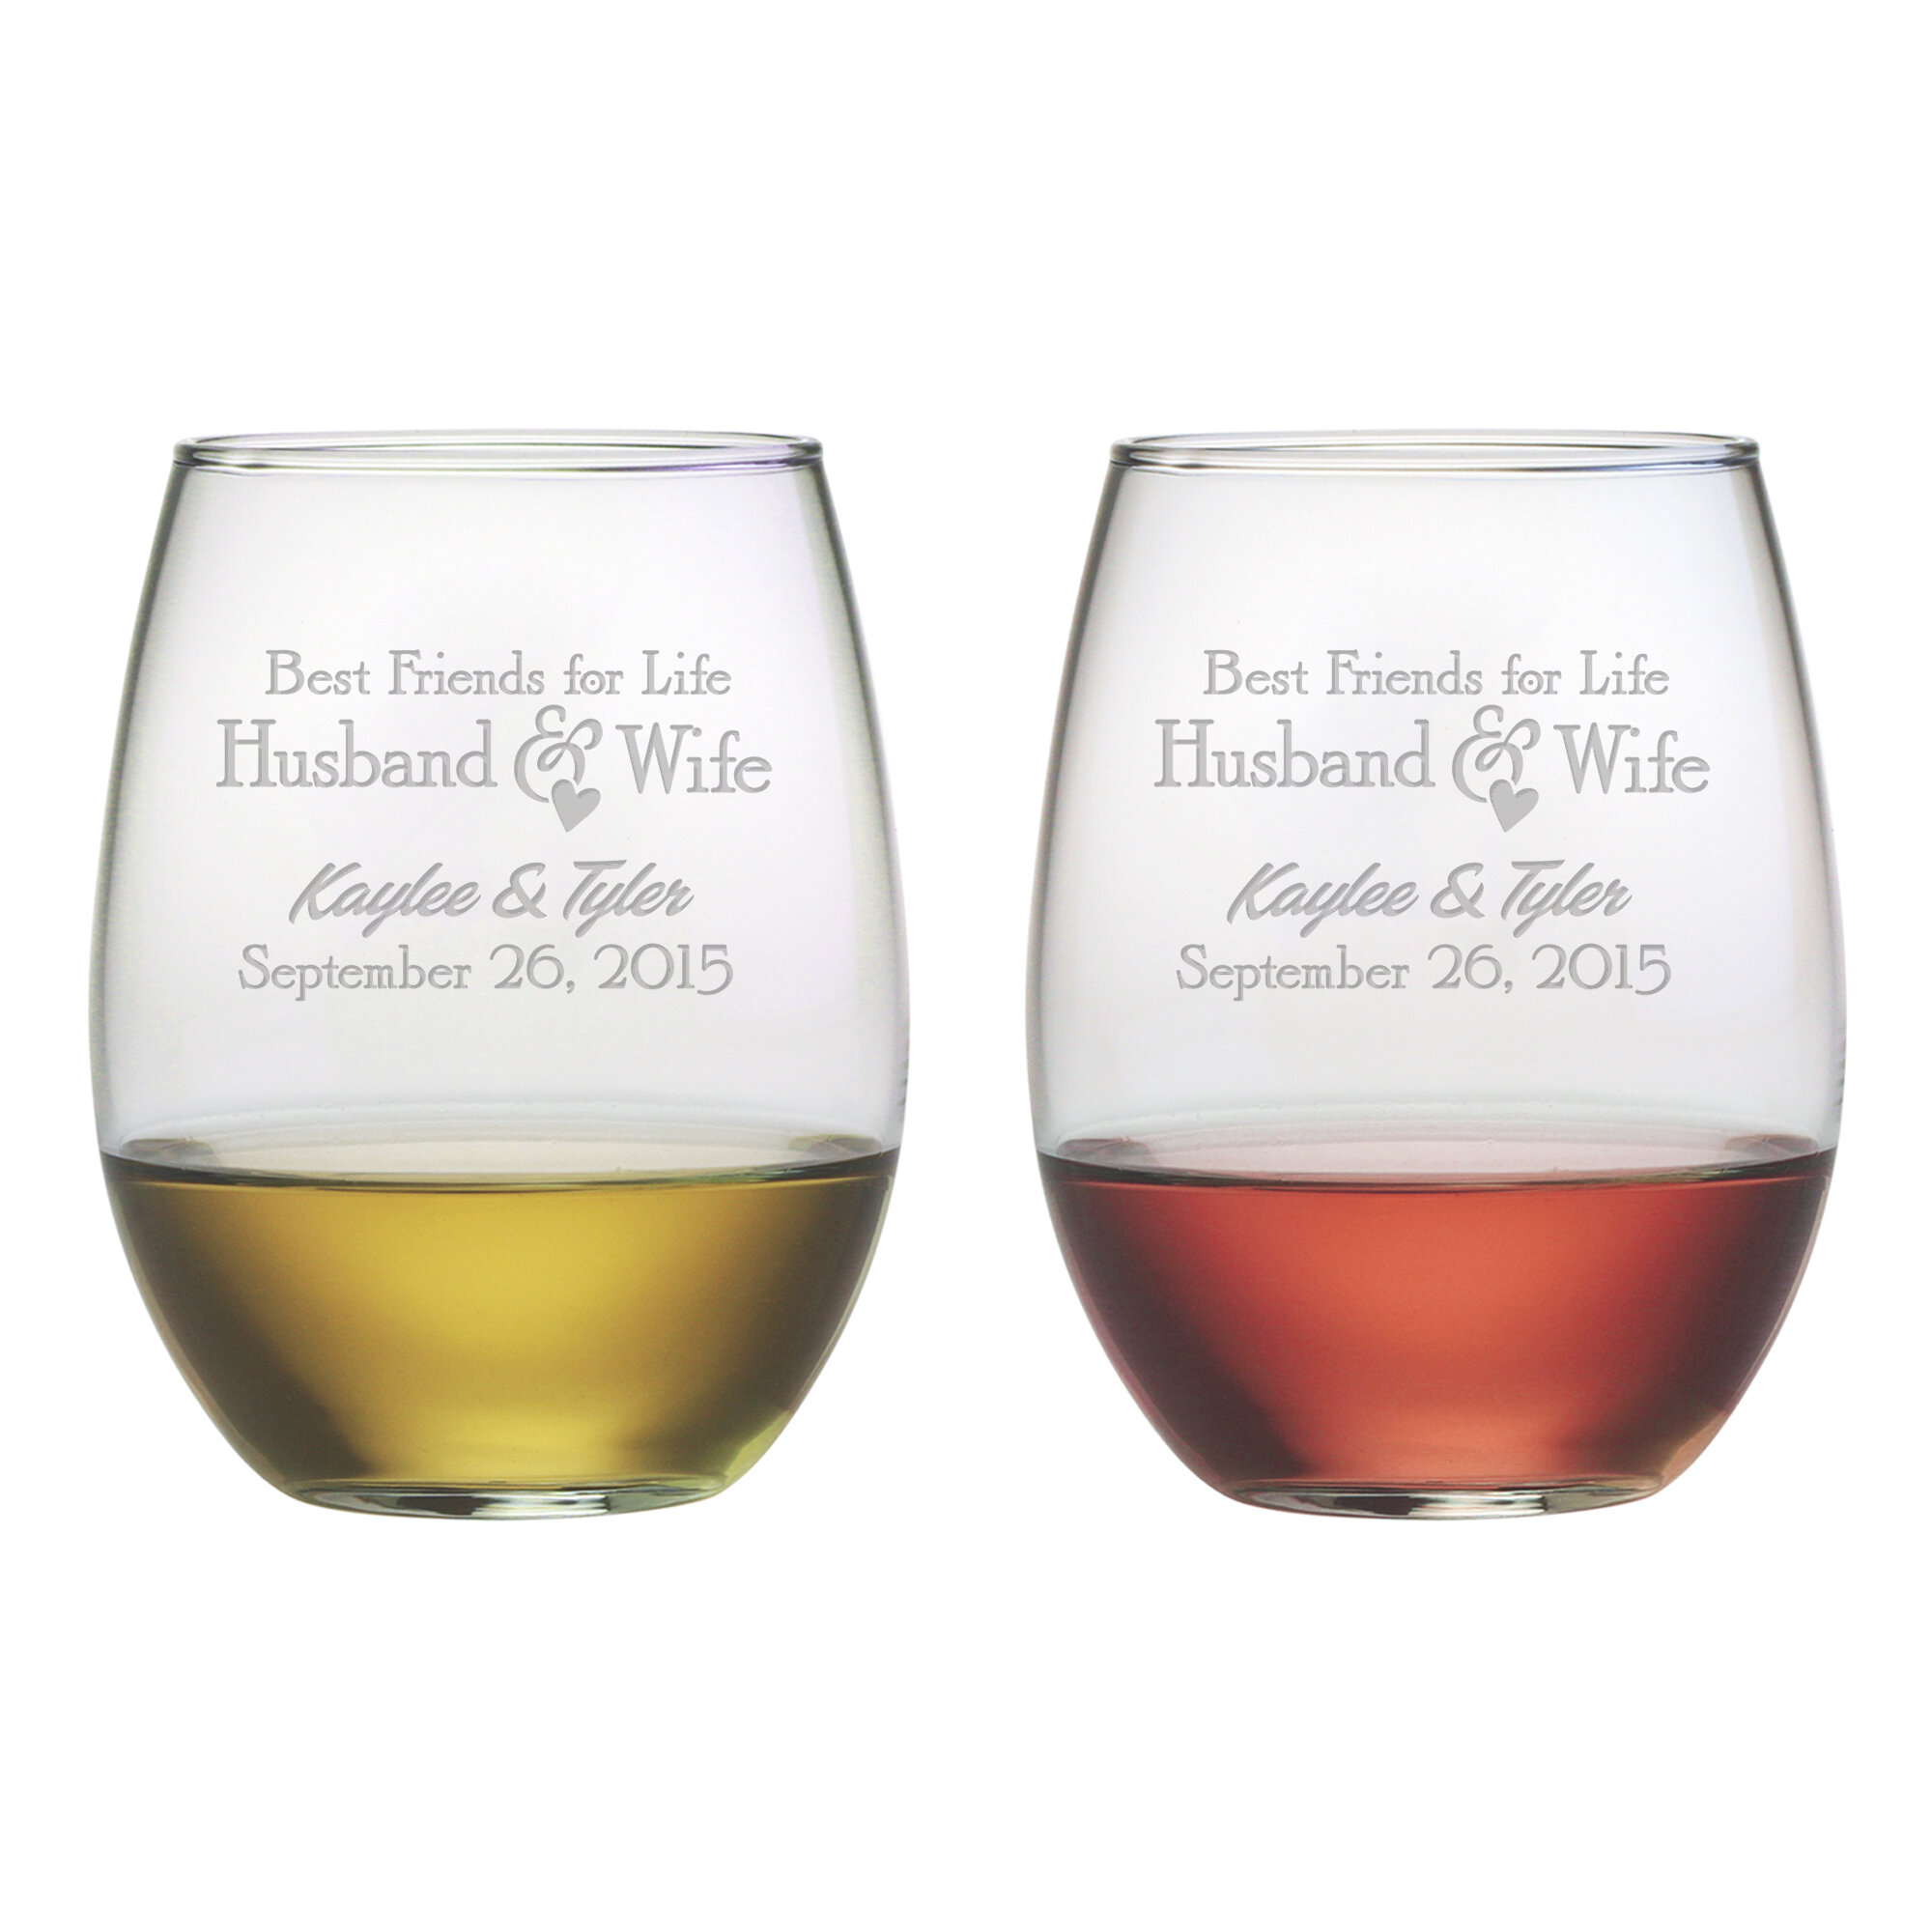 https://assets.wfcdn.com/im/21845920/compr-r85/2640/26406073/susquehanna-glass-best-friends-for-life-2-piece-21oz-glass-all-purpose-wine-glass-stemware-set.jpg